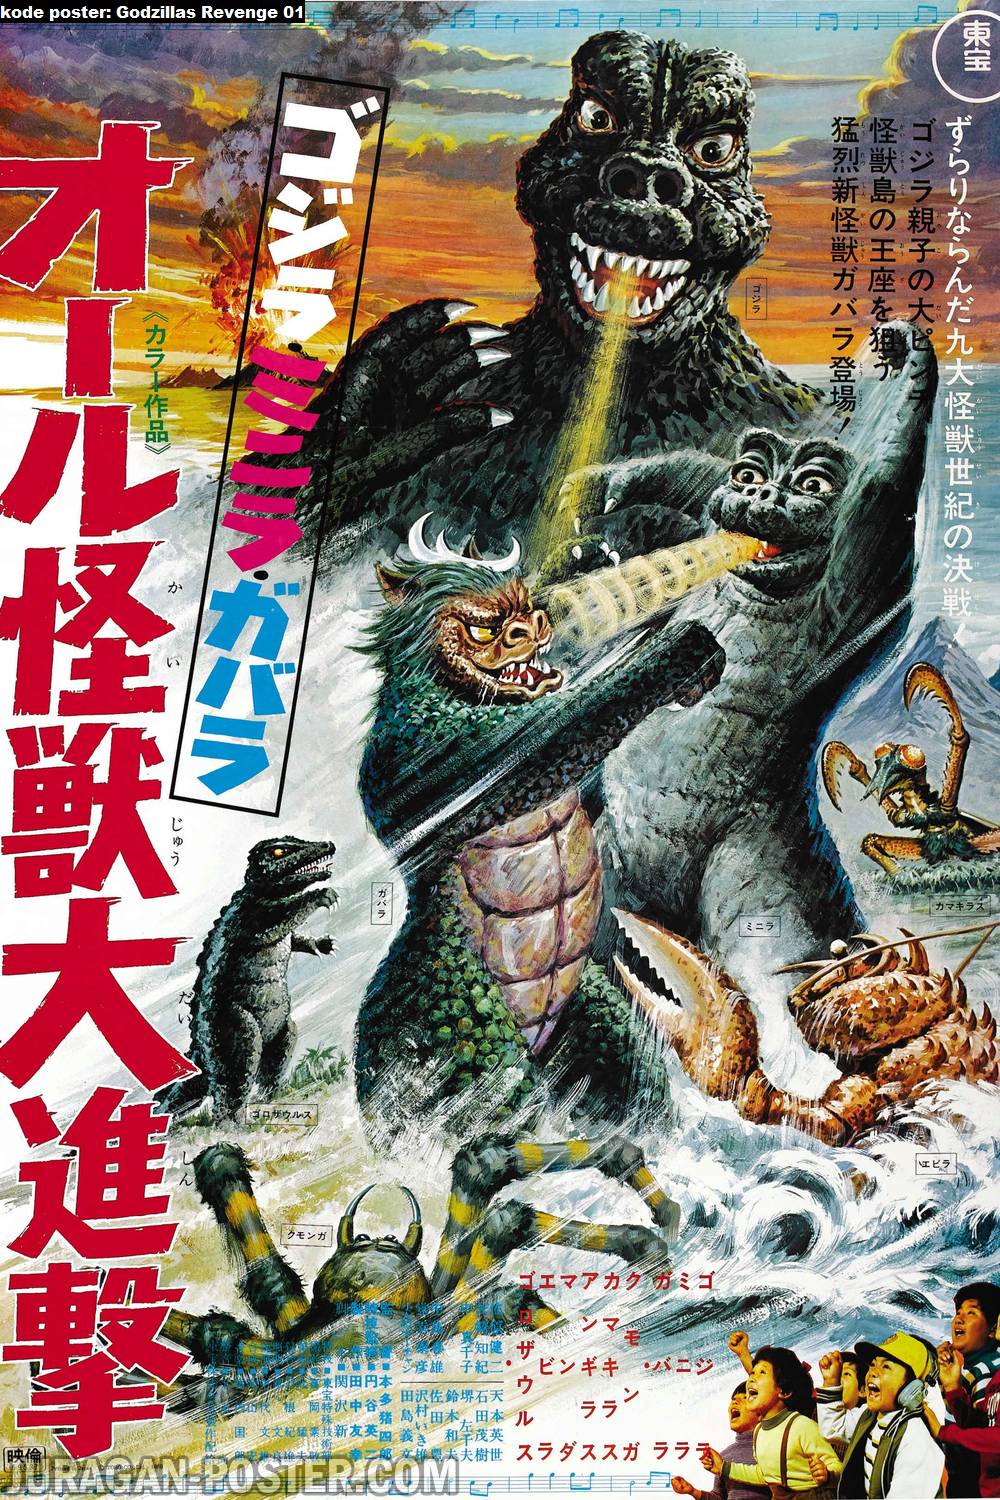 Godzillas Revenge Jual Poster Di Juragan Poster